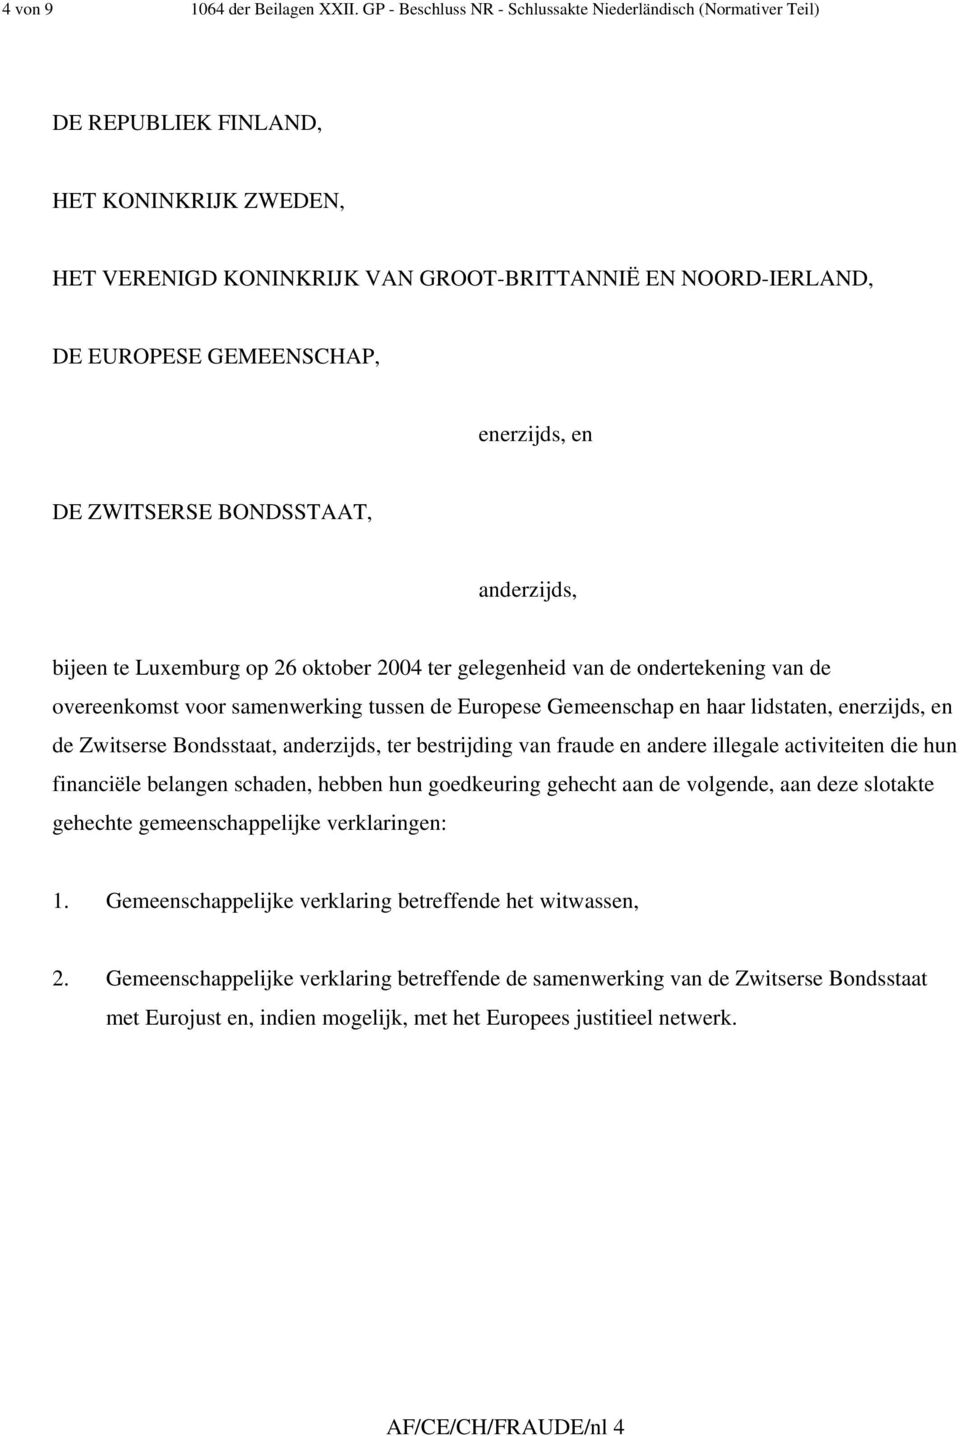 enerzijds, en DE ZWITSERSE BONDSSTAAT, anderzijds, bijeen te Luxemburg op 26 oktober 2004 ter gelegenheid van de ondertekening van de overeenkomst voor samenwerking tussen de Europese Gemeenschap en